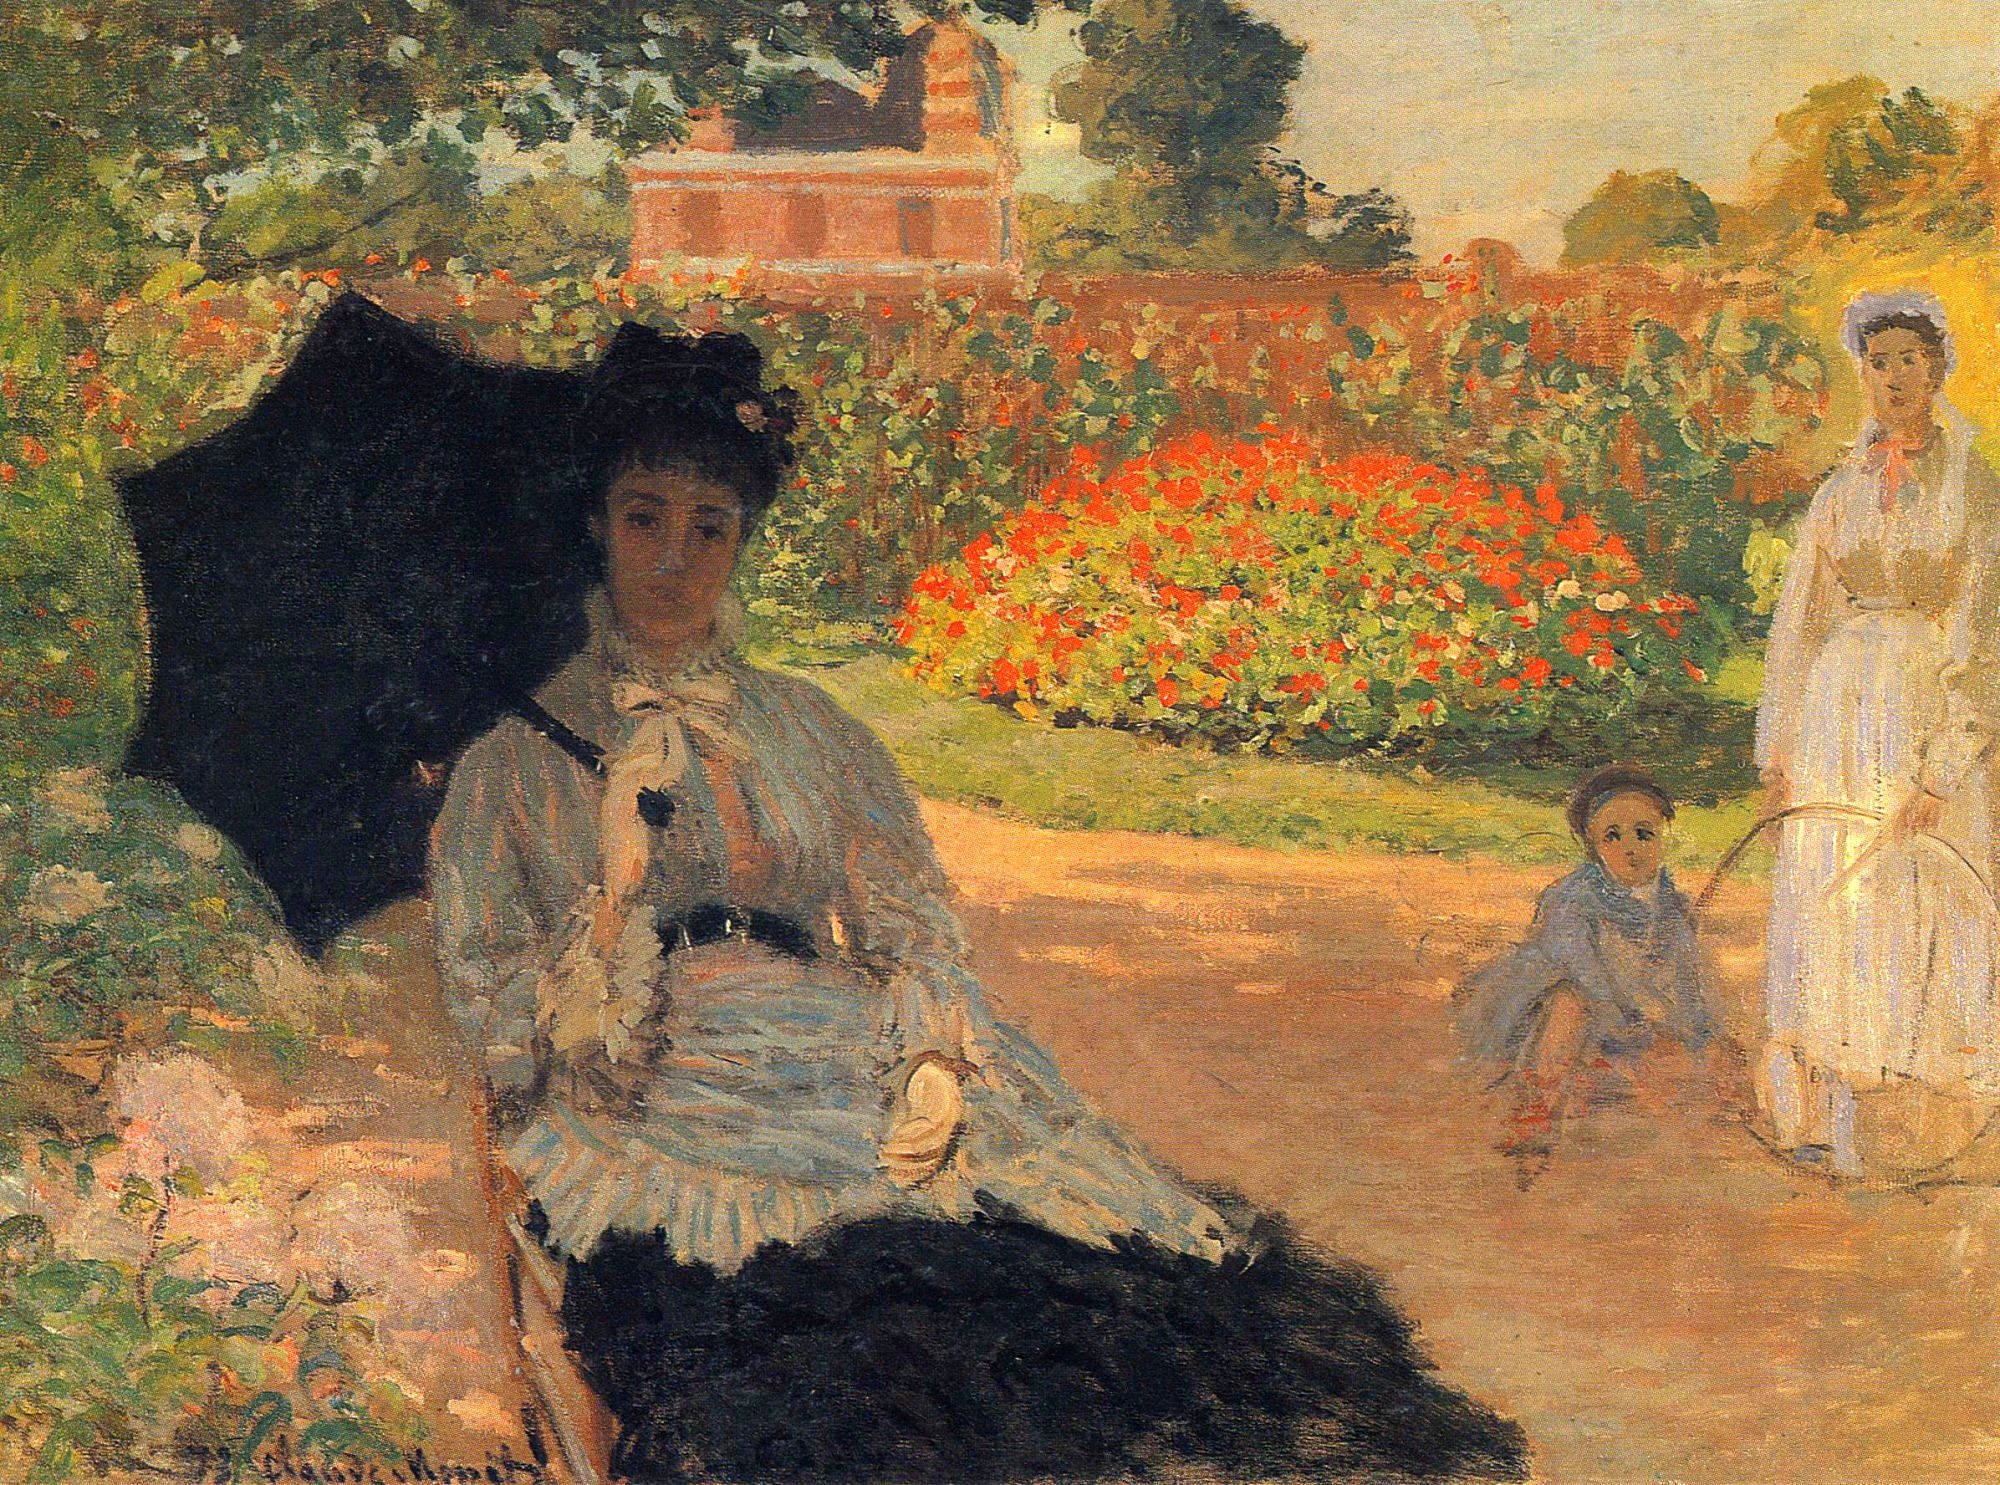 Camille Monet dans le jardin by Claude Monet - 1873 - 79.5 x 59 cm Foundation E.G. Bührle